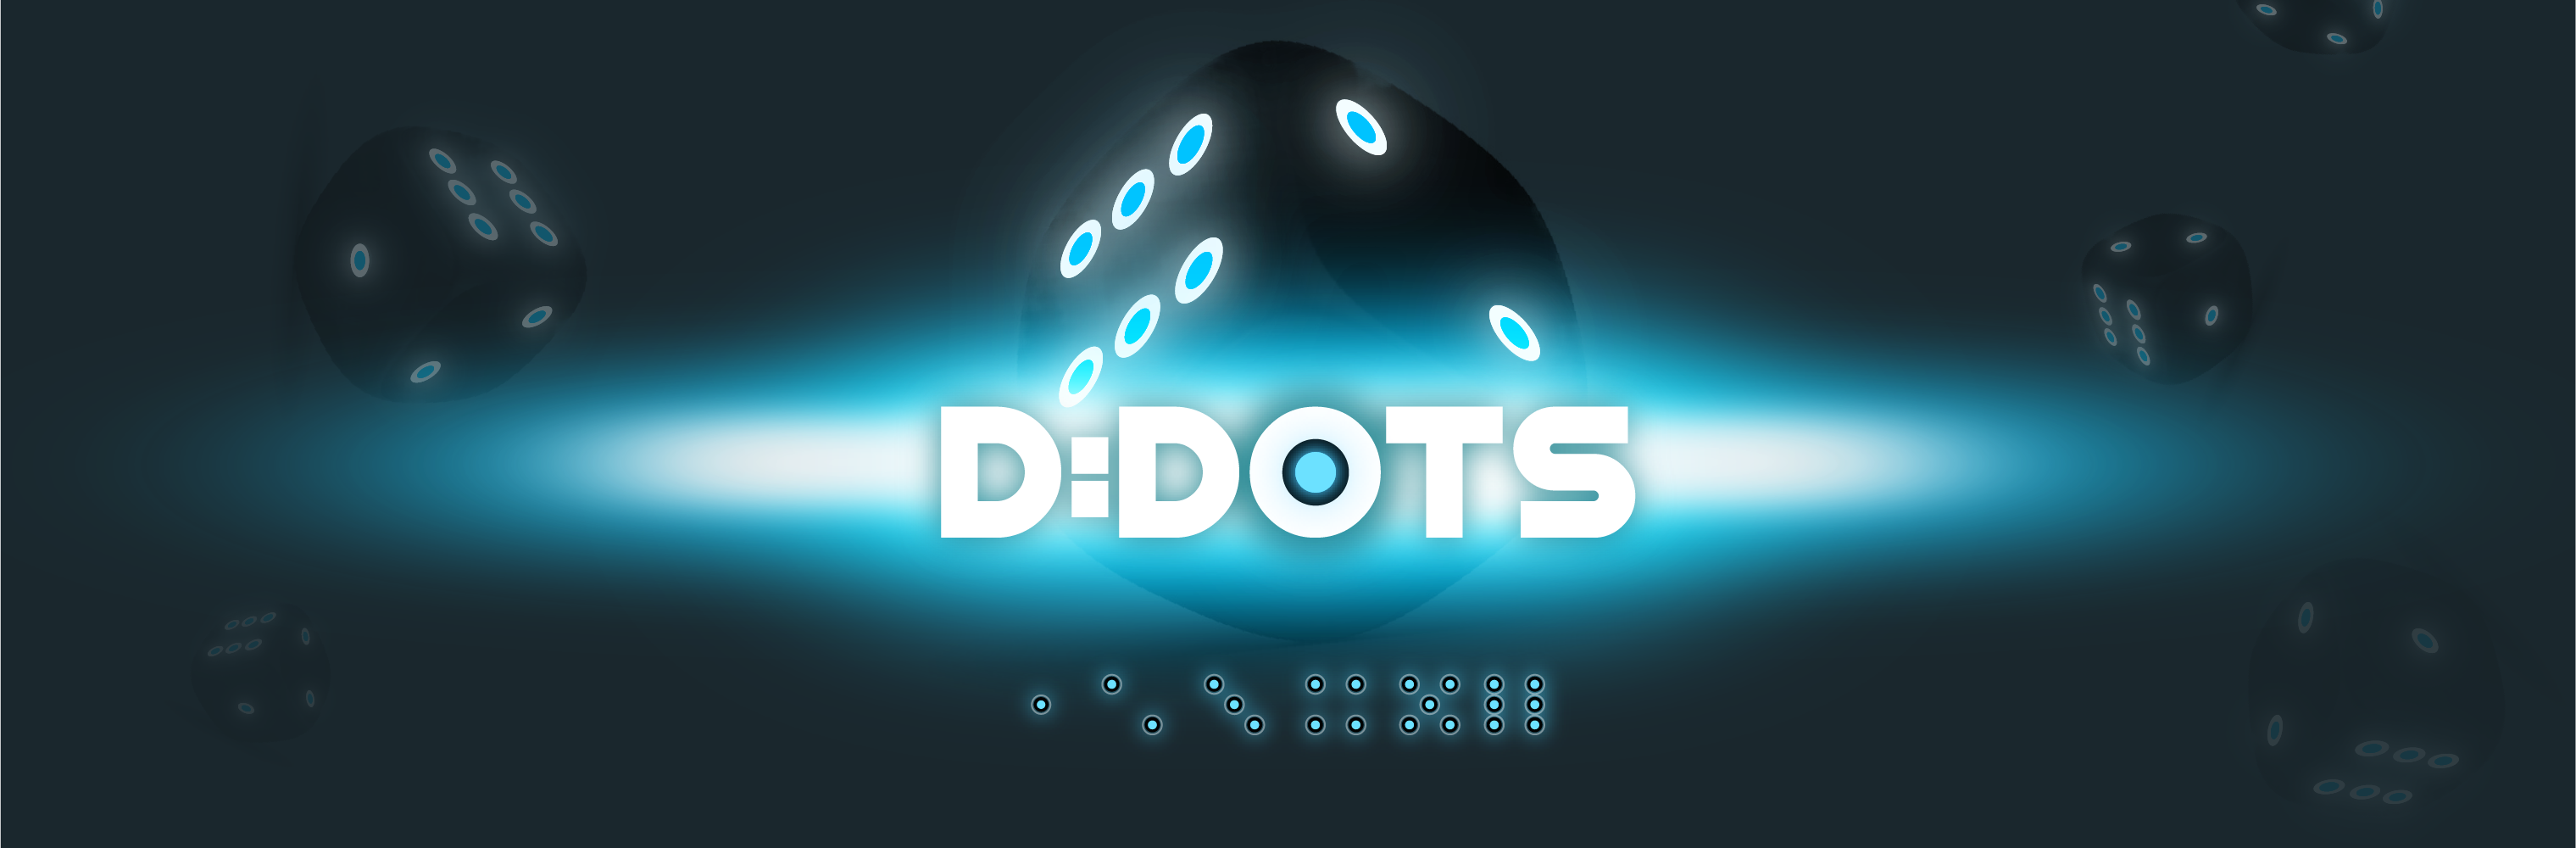 D:Dots